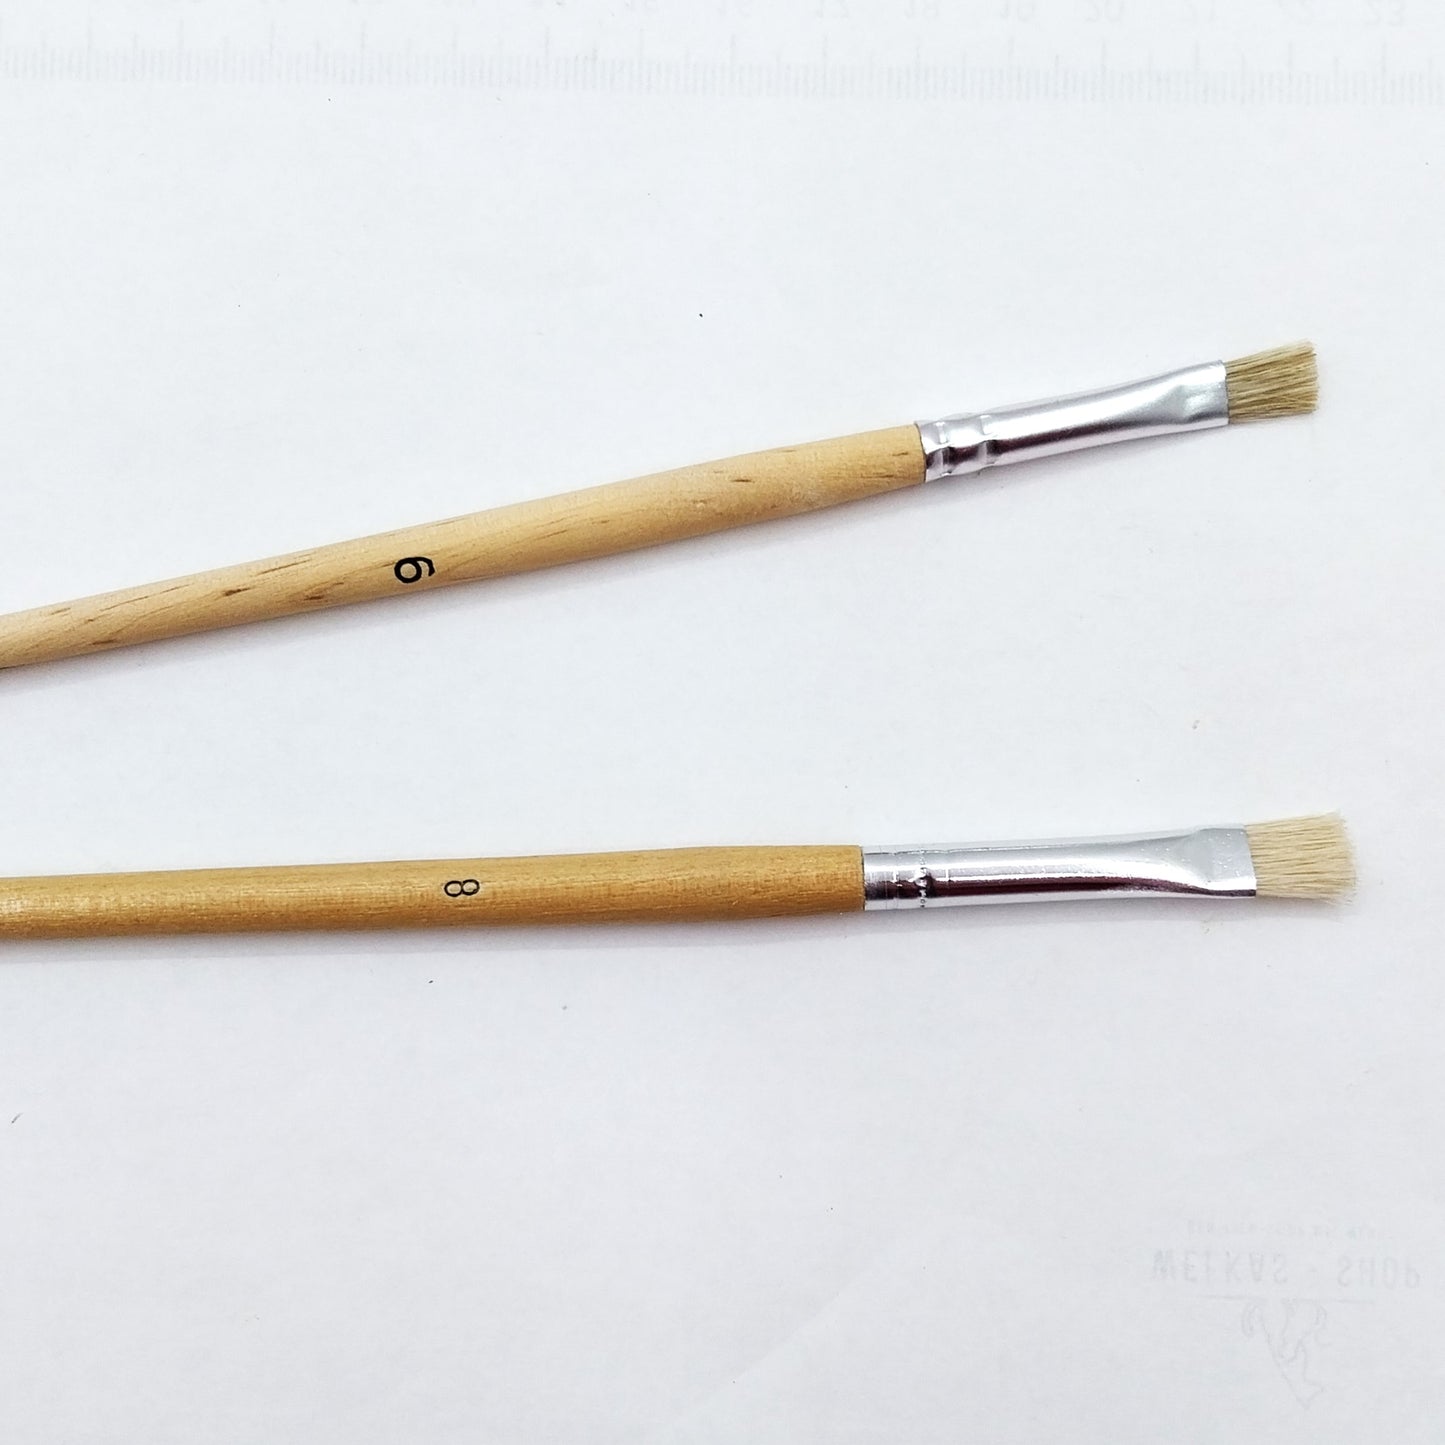 Puderpinsel Flachpinsel Schweineborstenpinsel mit Holzstiel in 6 und 8 mm